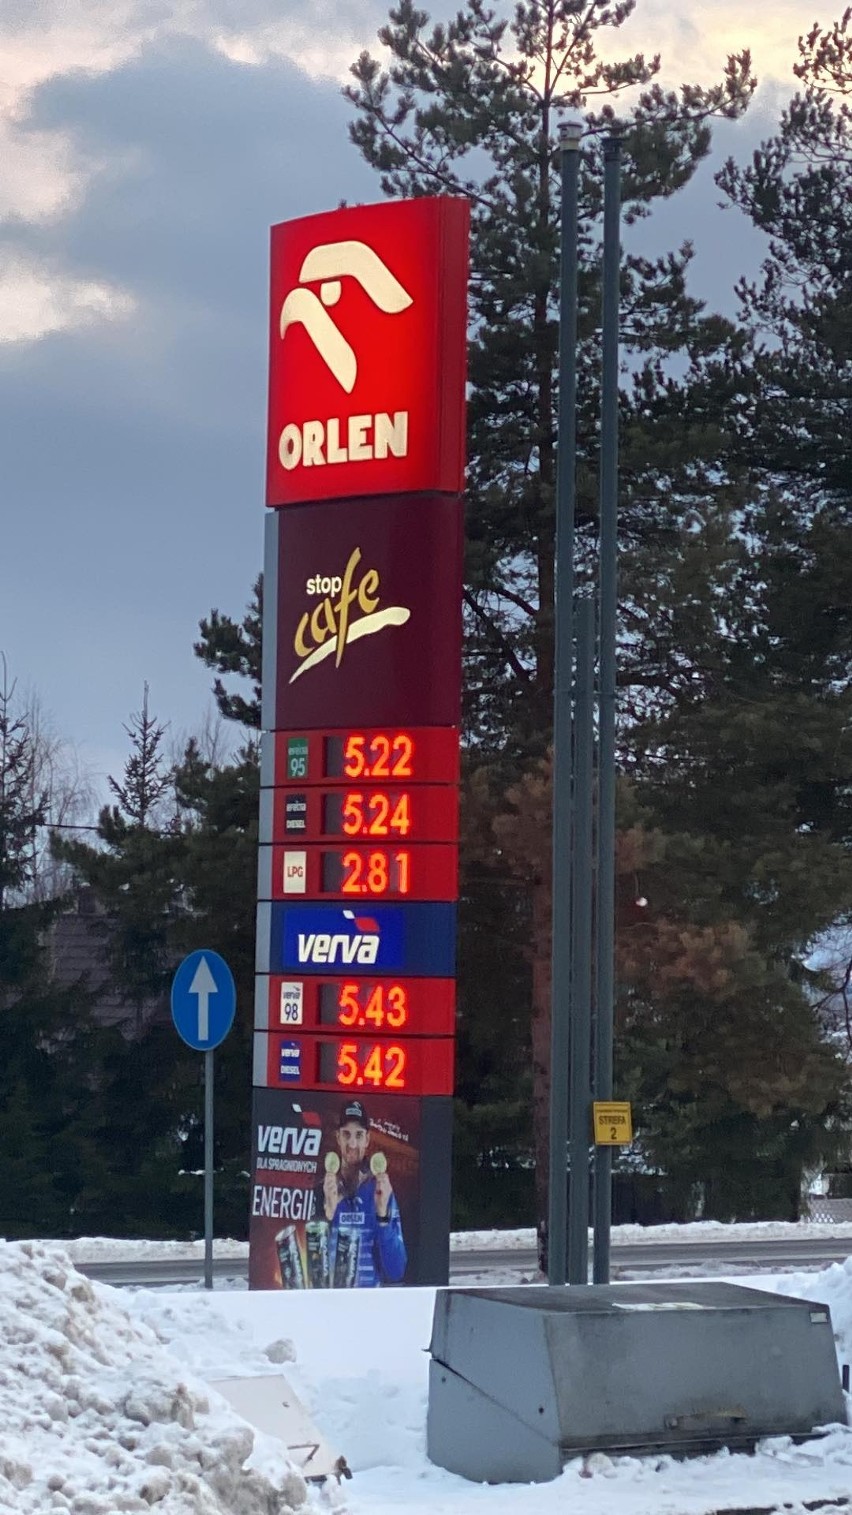 Jabłonka. Słowacki najazd na stację benzynową. Spadła cena, ustawiają się kolejki aut na słowackich numerach rejestracyjnych